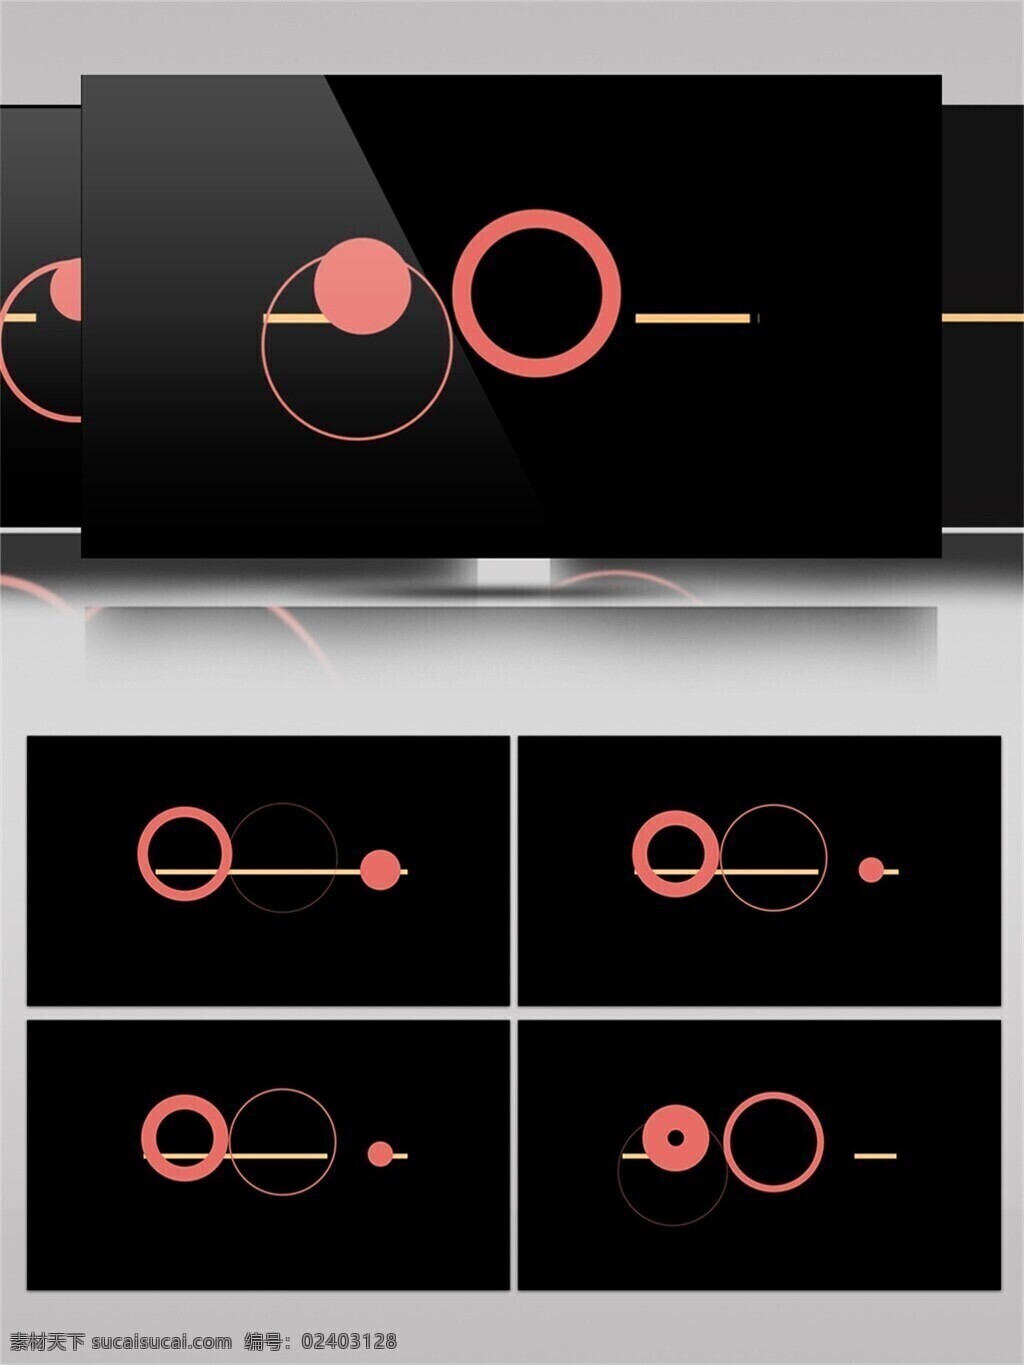 圆形 圆环 线条 动画 视频 组合 图形设计 创意 动画设计 动感 动态变化